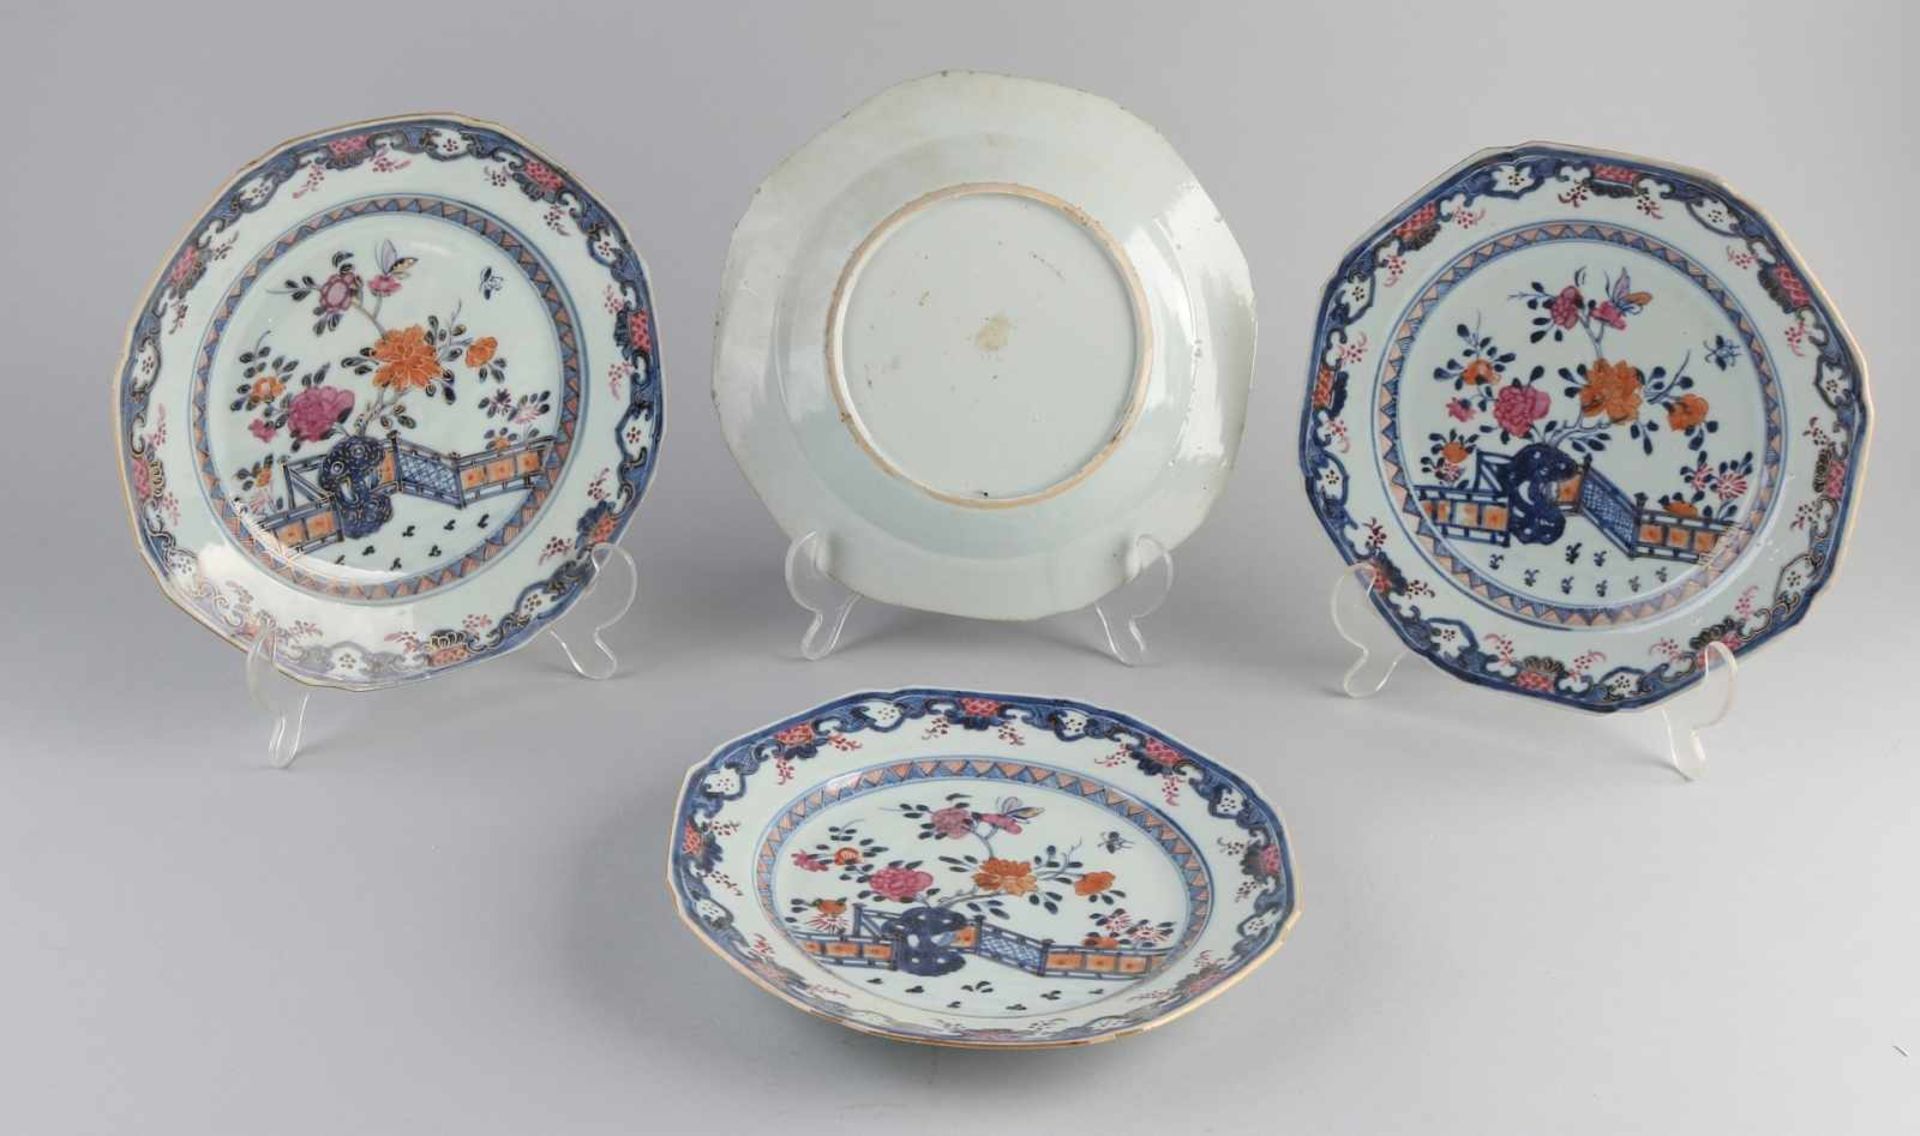 Vier chinesische Porzellanteller aus dem 18. Jahrhundert. Achteckige Teller mit Gartendekor. Eins